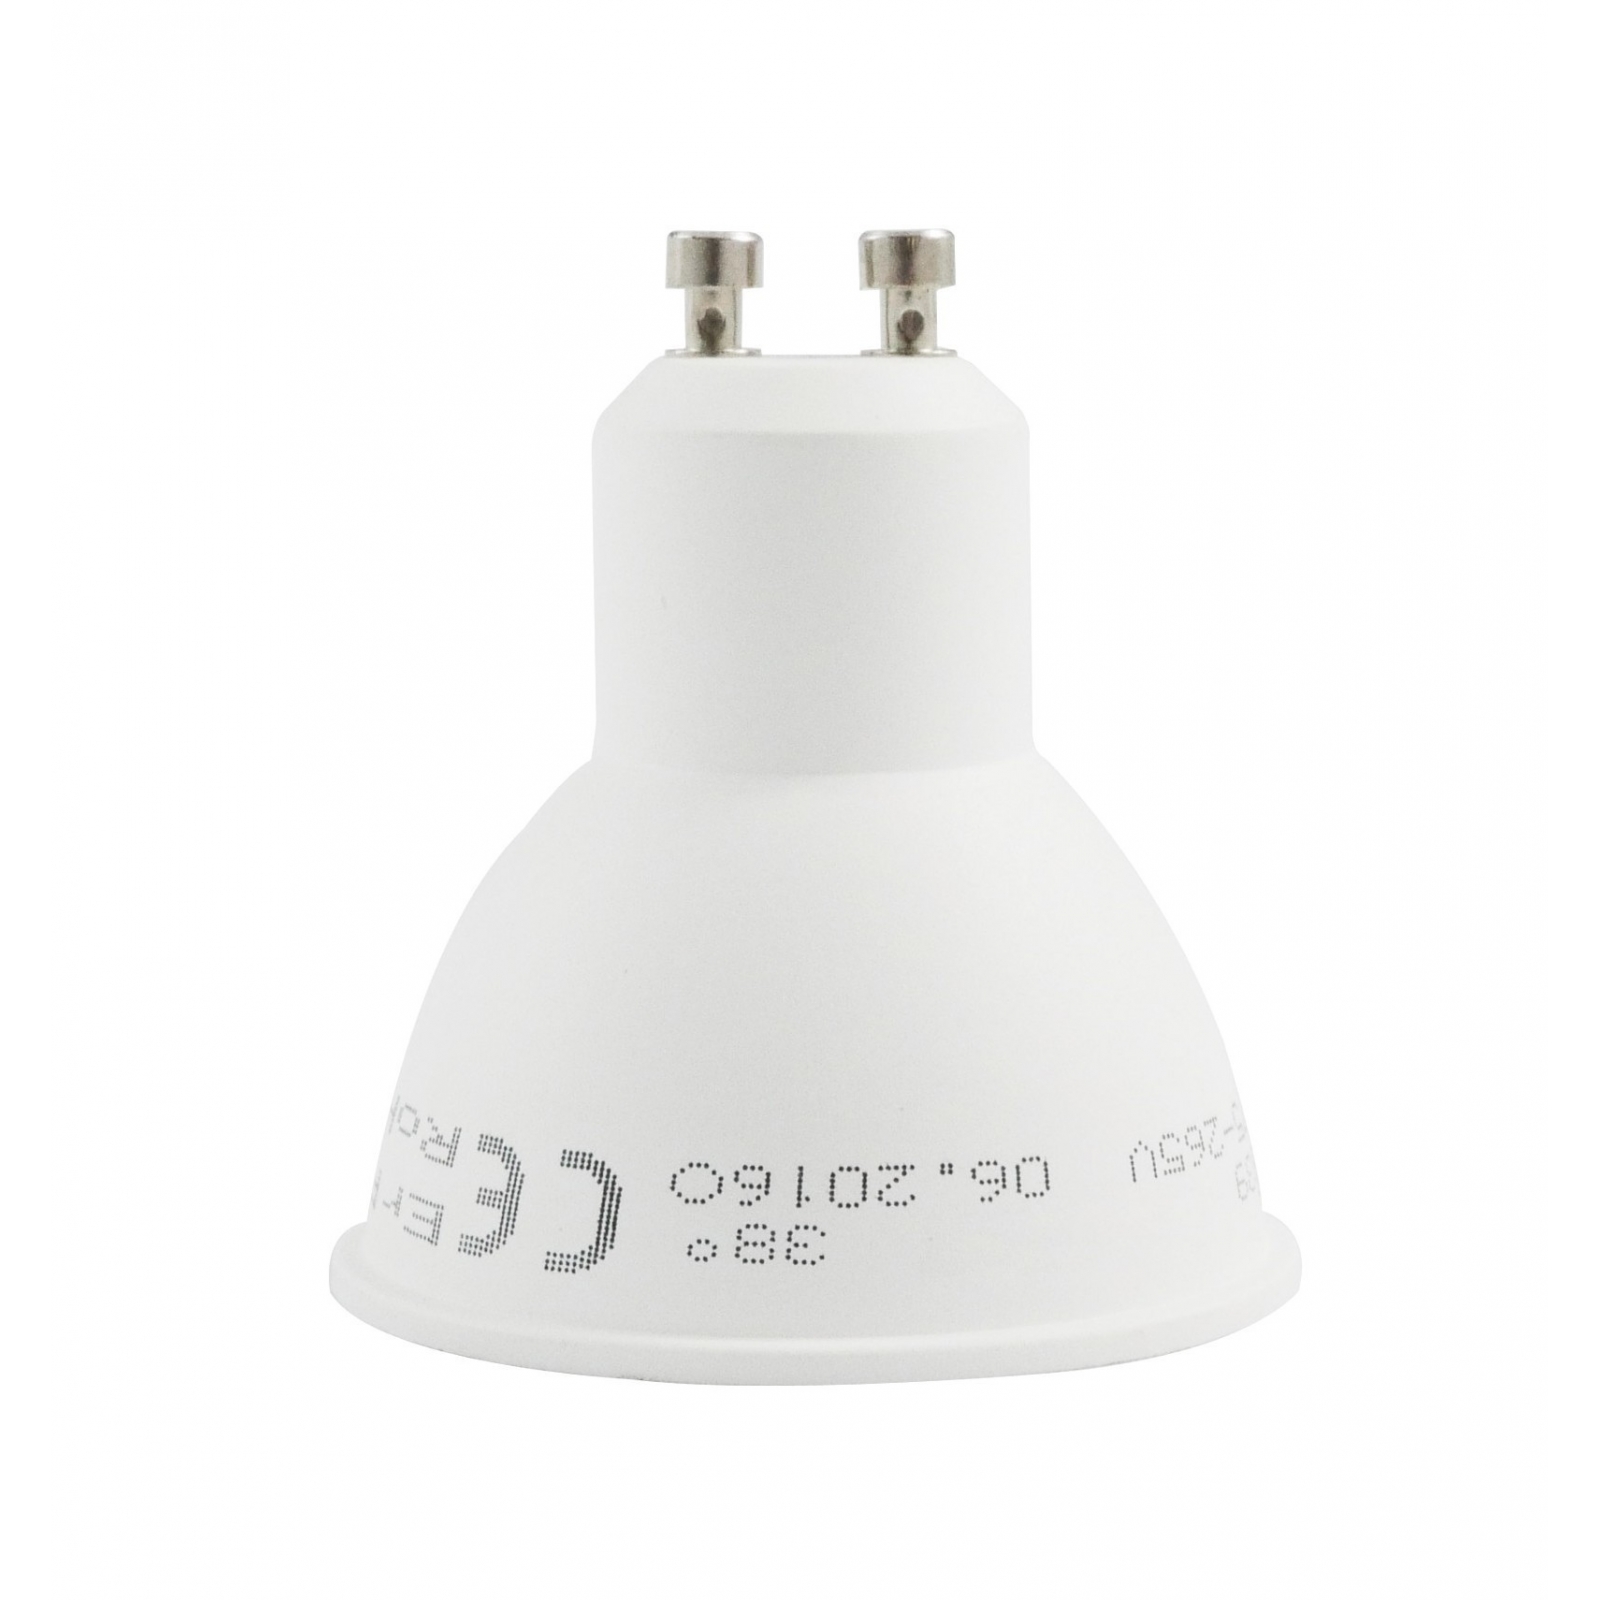 LE GU10 Ampoules LED, Blanc Chaud 2700K Ampoules Cameroon